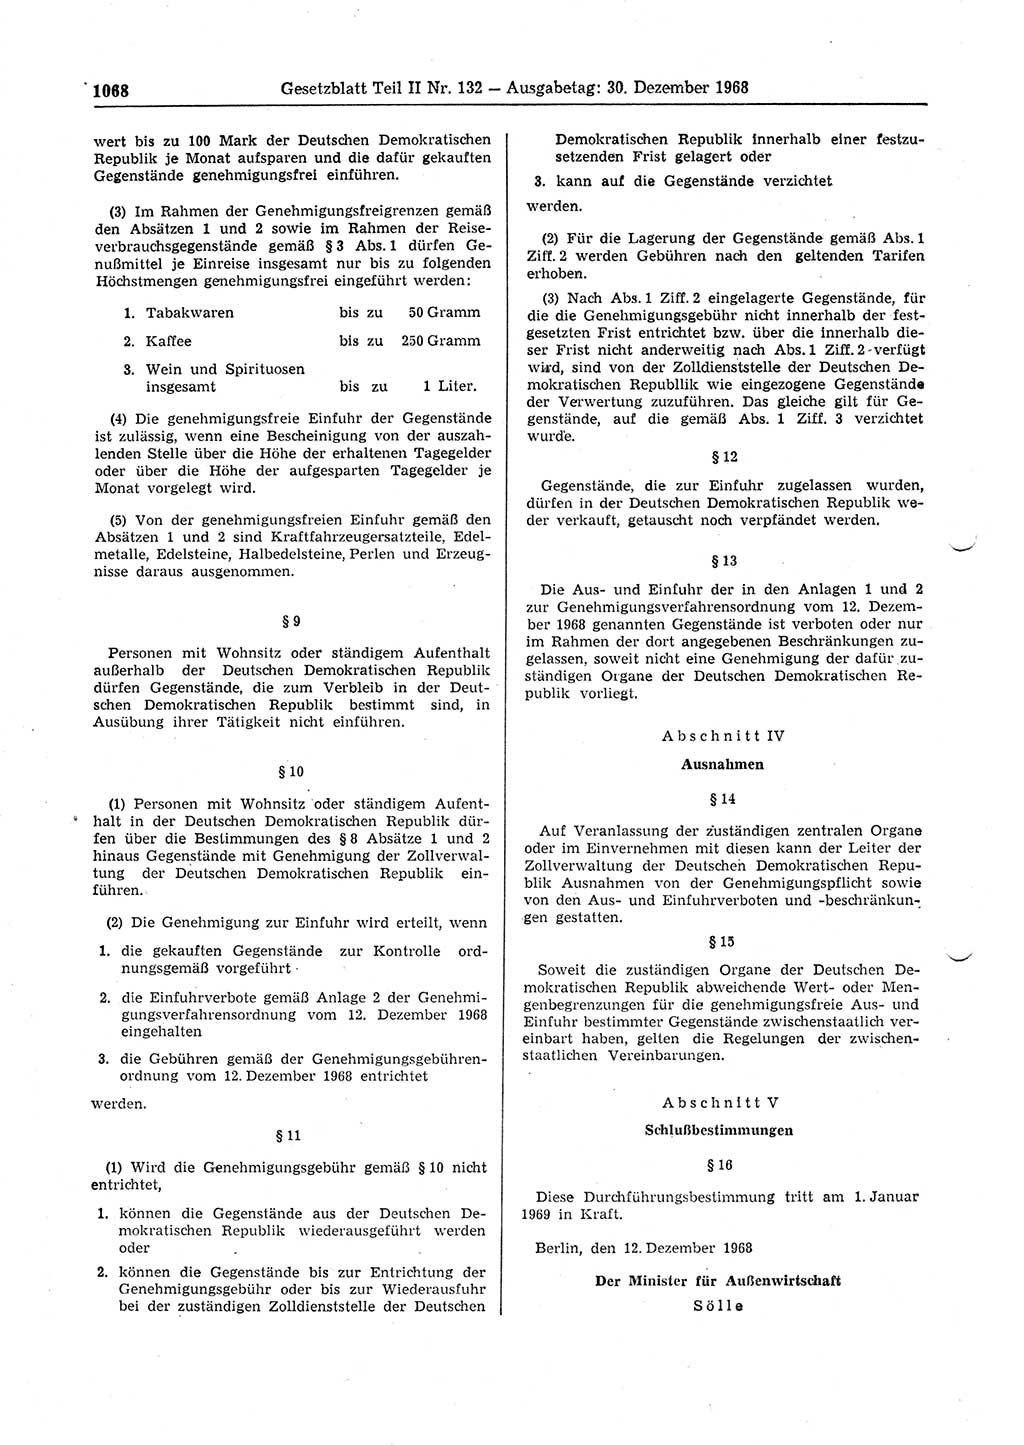 Gesetzblatt (GBl.) der Deutschen Demokratischen Republik (DDR) Teil ⅠⅠ 1968, Seite 1068 (GBl. DDR ⅠⅠ 1968, S. 1068)